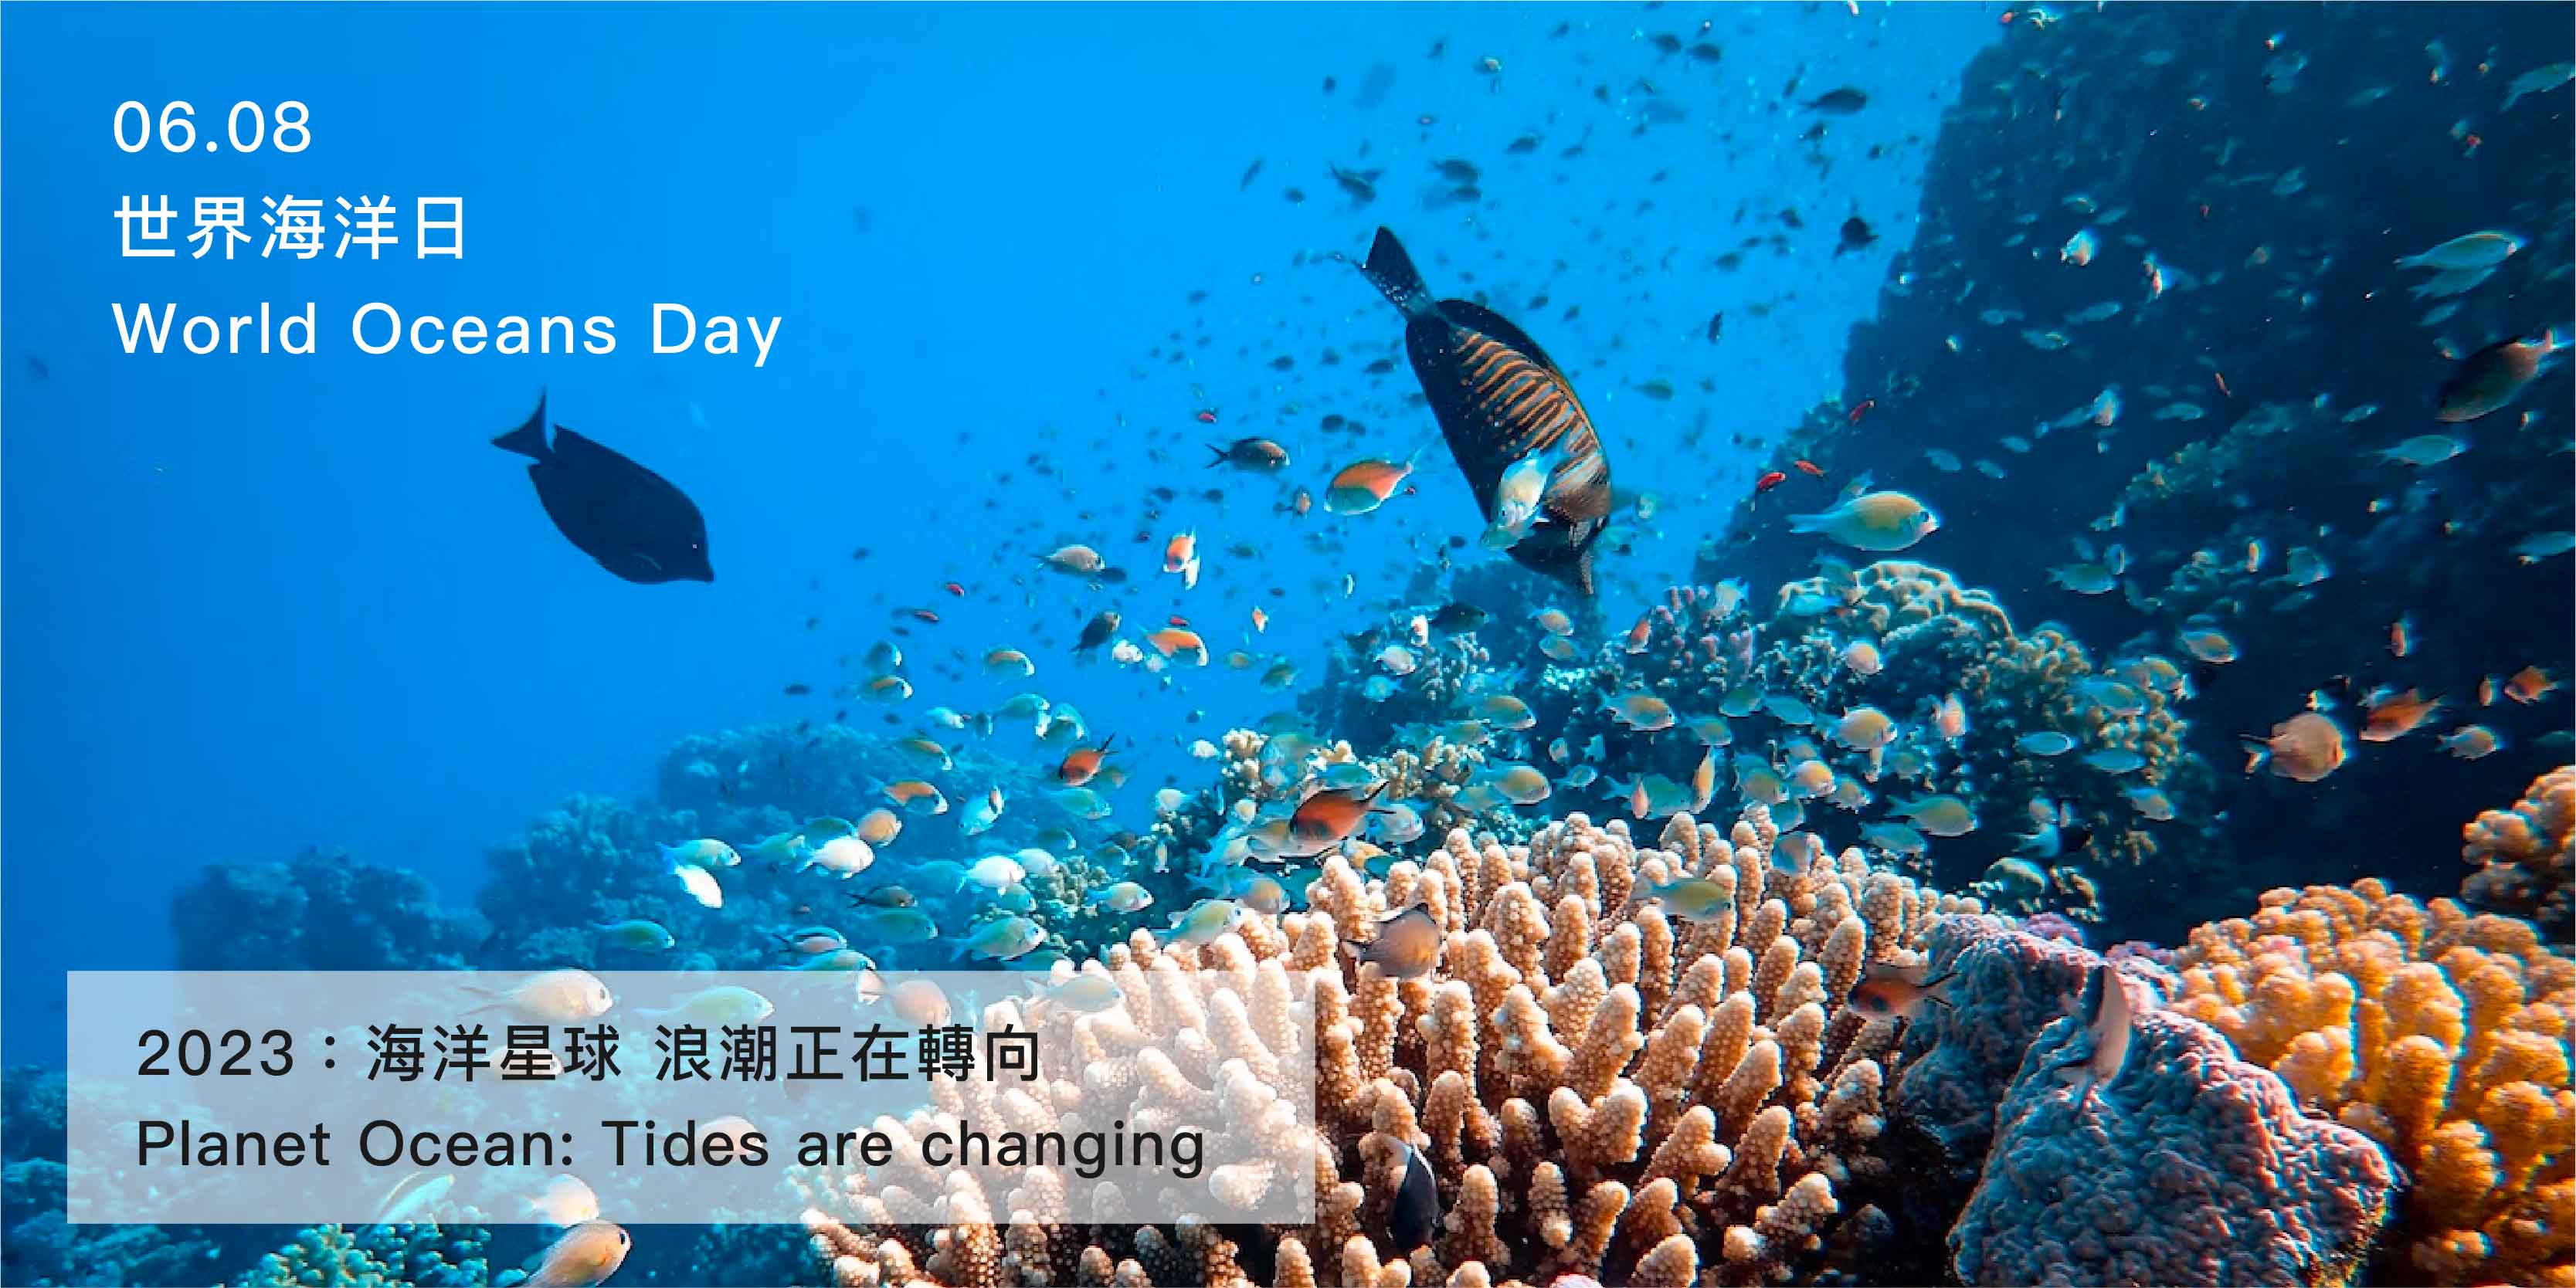 世界海洋日,world oceans day,環保,20230608